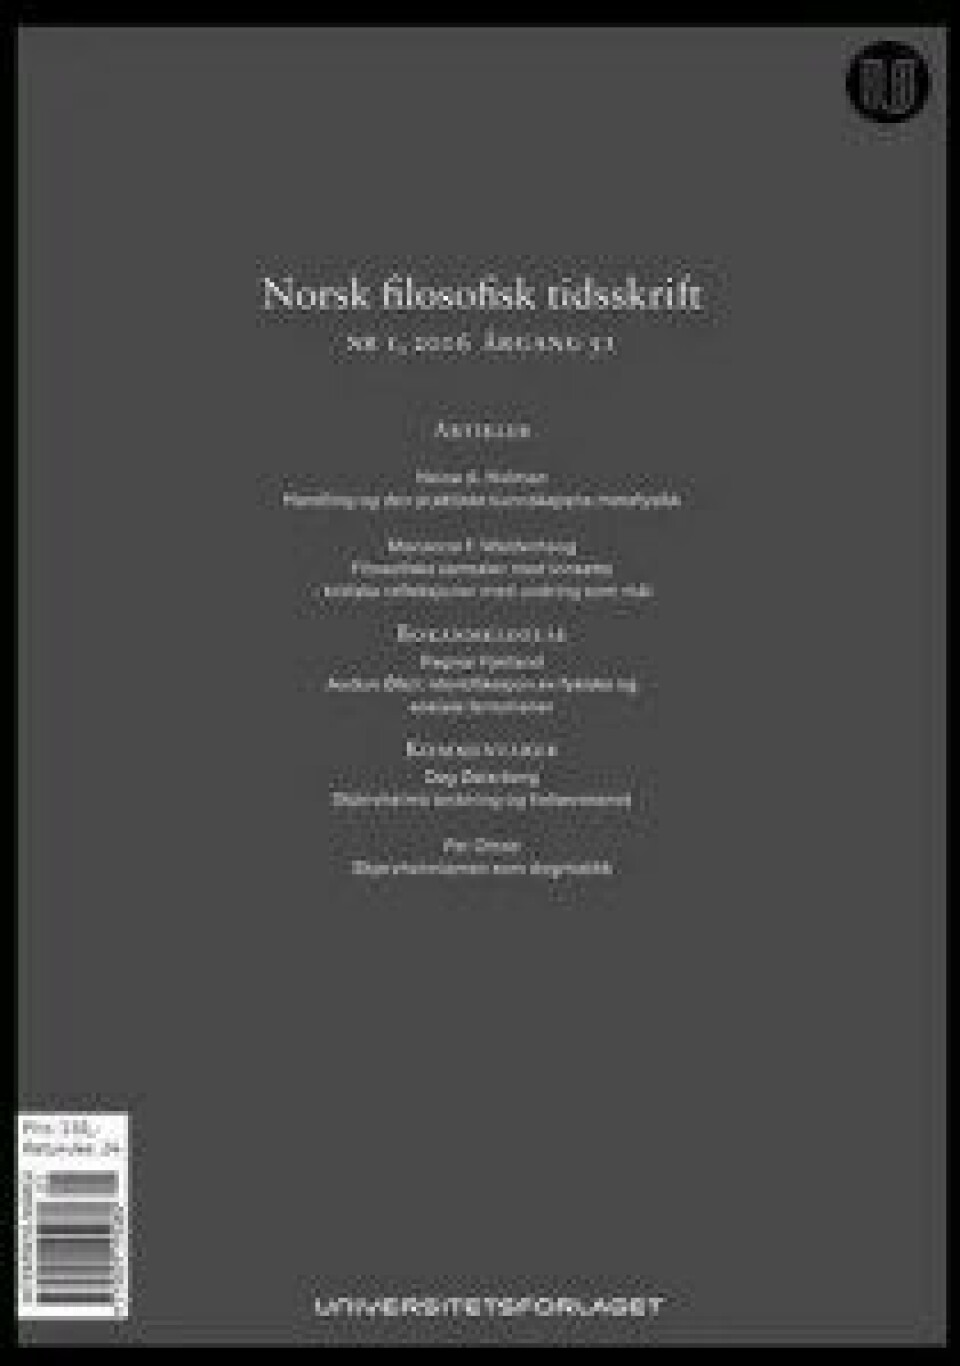 En lengre versjon av artikkelen stod på trykk i Norsk Filosofisk Tidsskrift 1/2016.